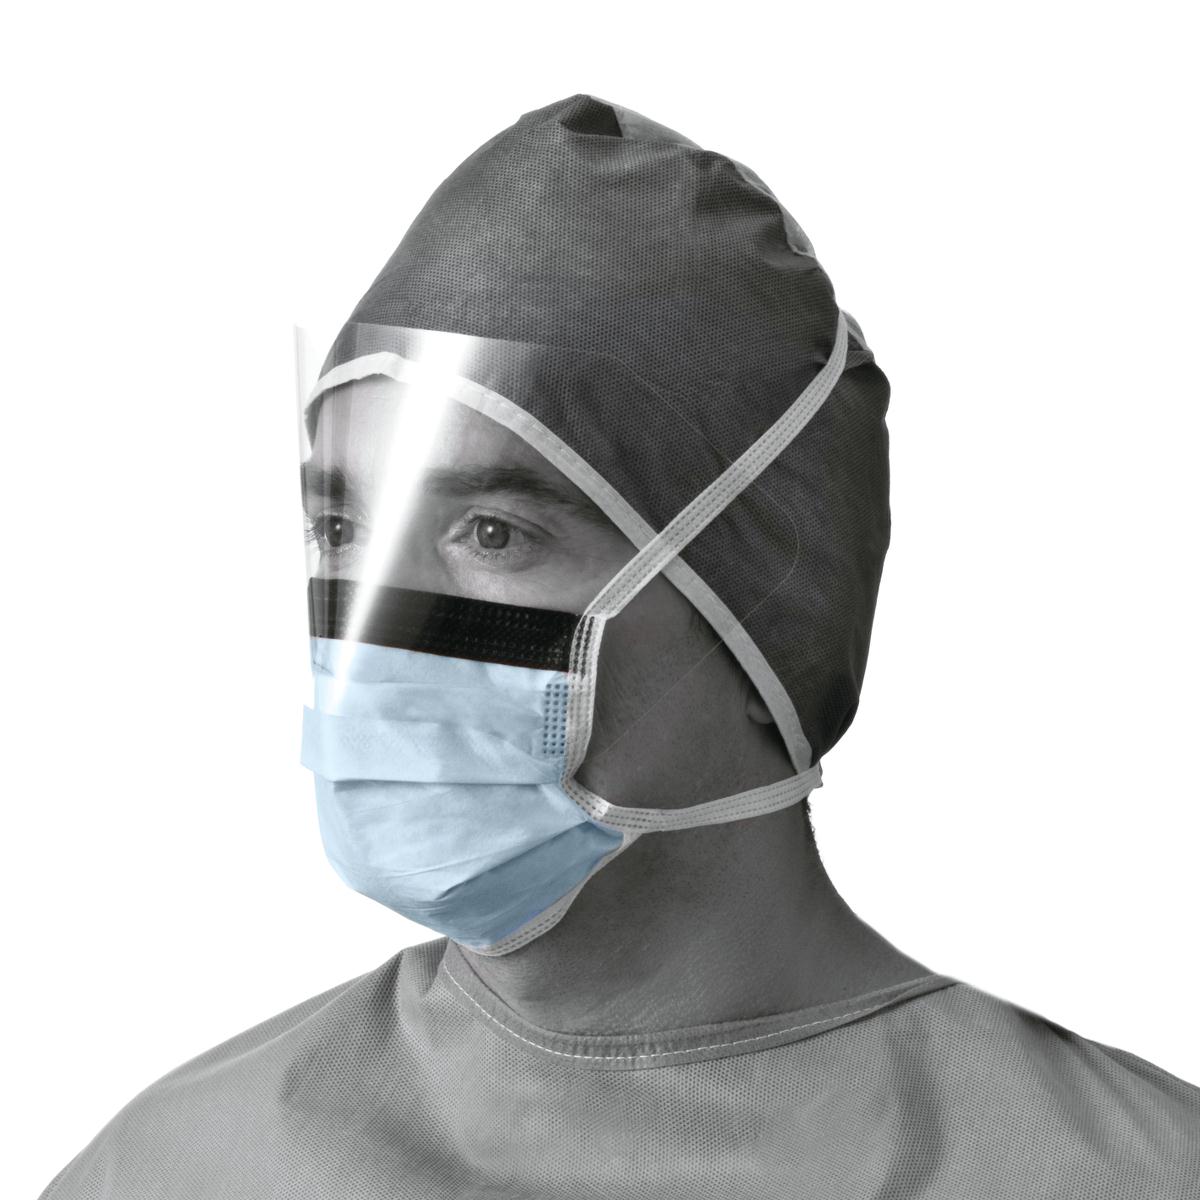 gurad surgical mask